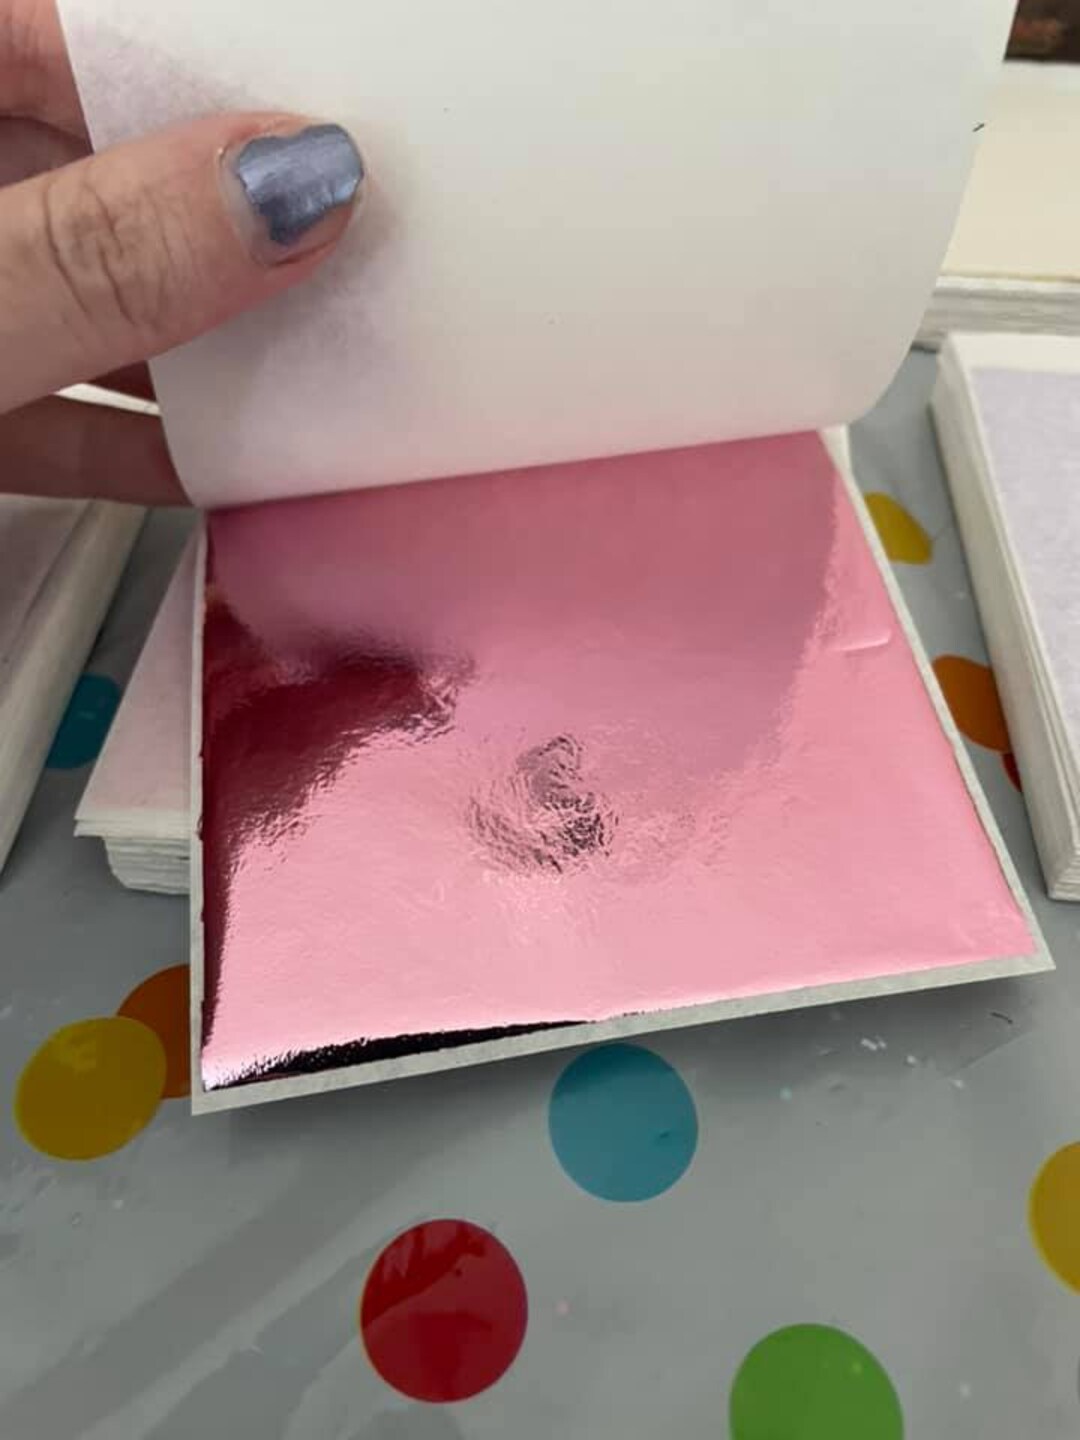 Pink Leaf Foil Paper Sheets for Crafts, Resin, Scrapbooking